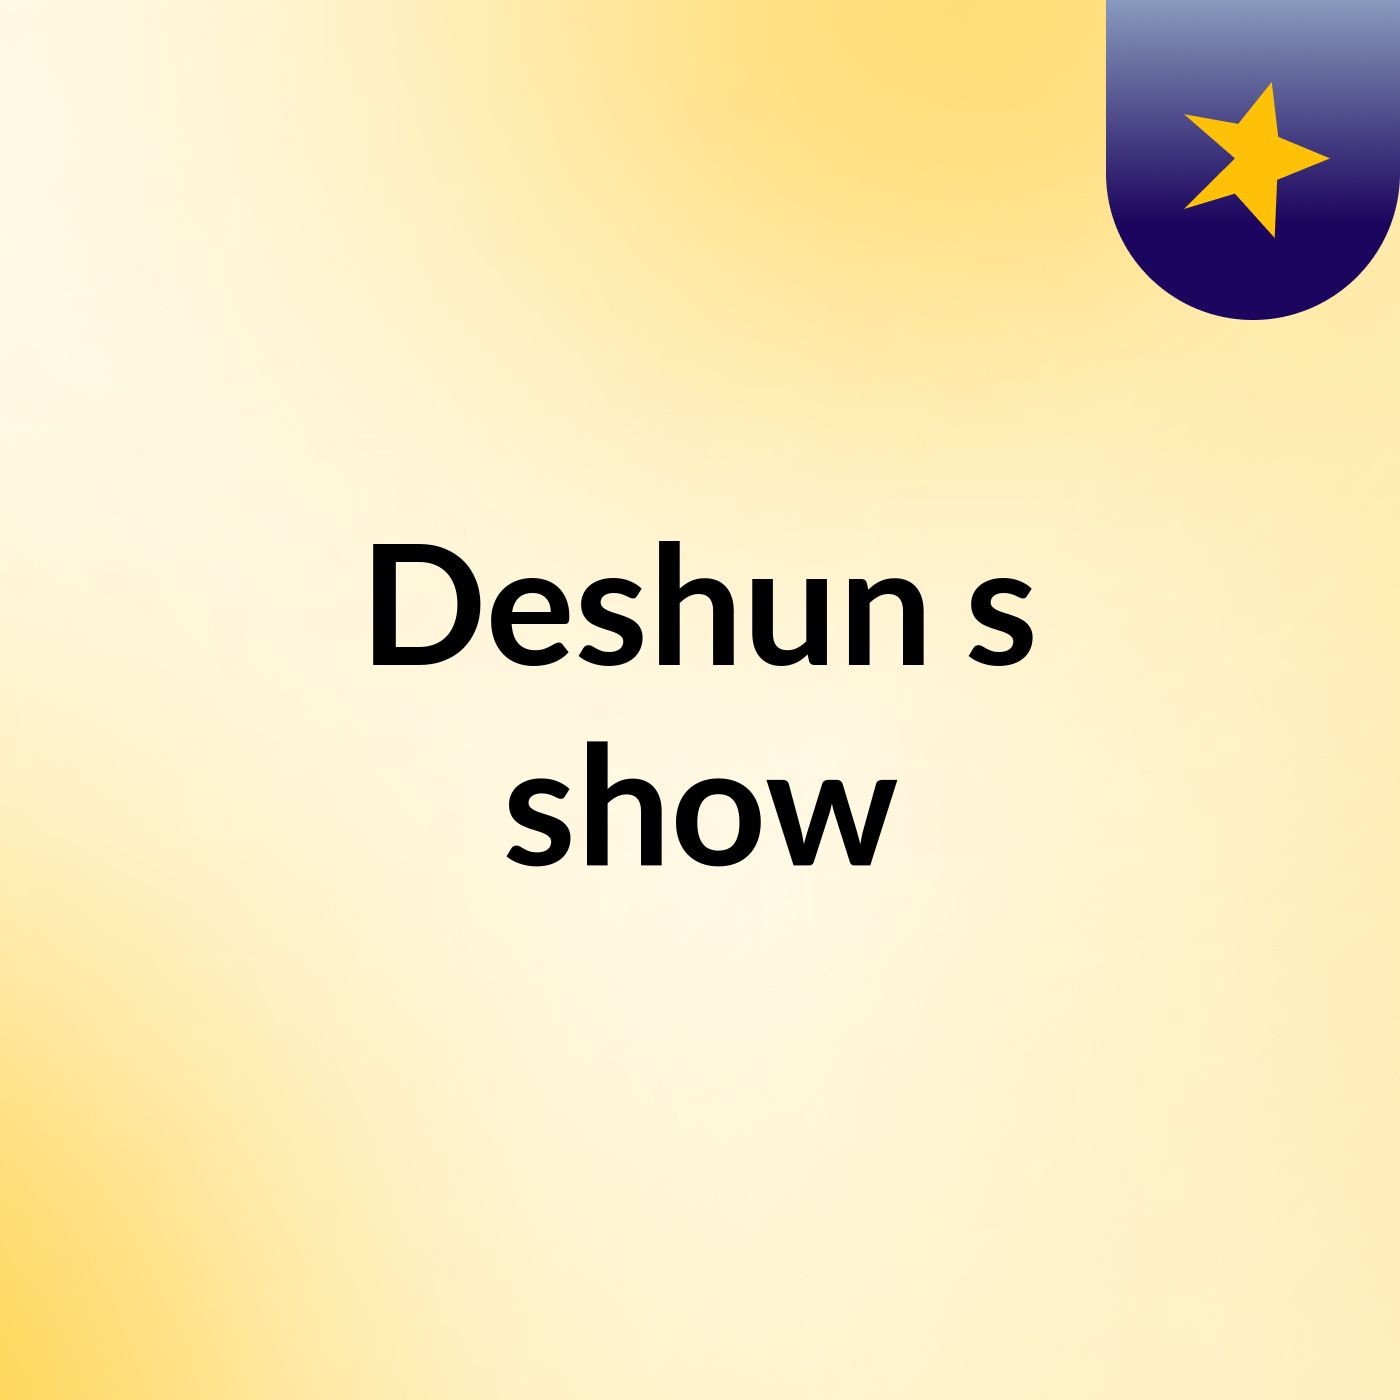 Deshun's show